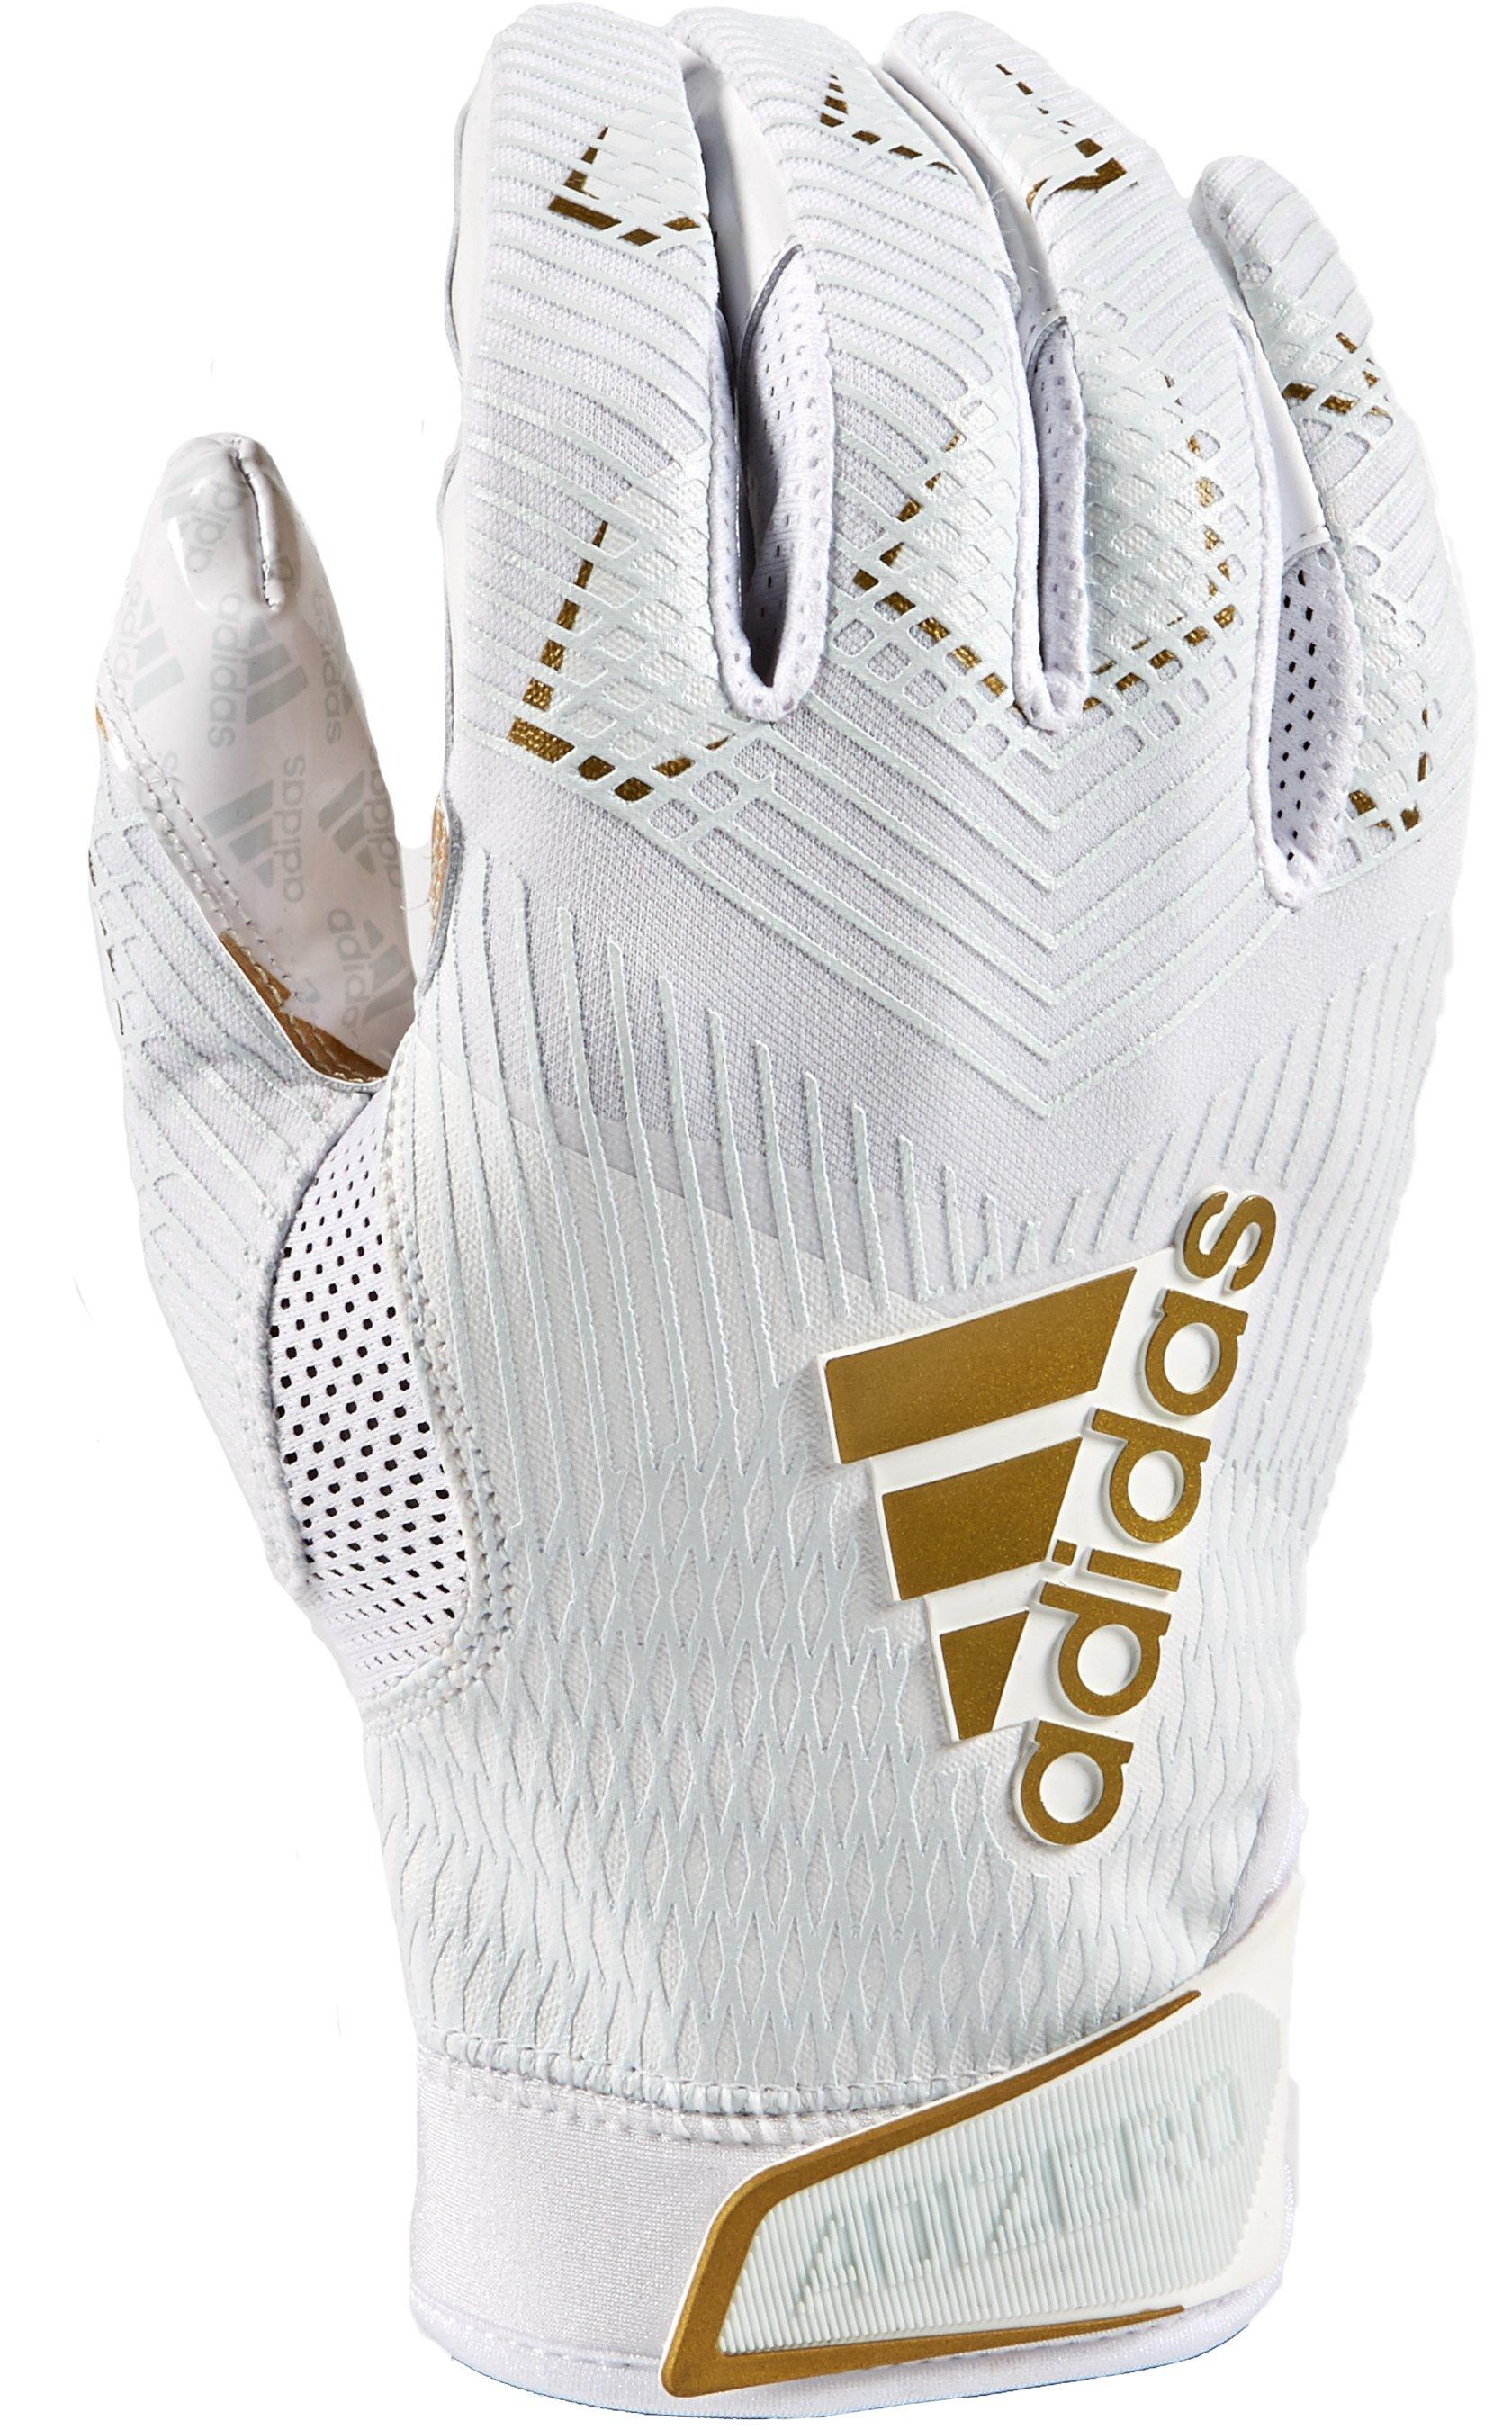 white adidas gloves